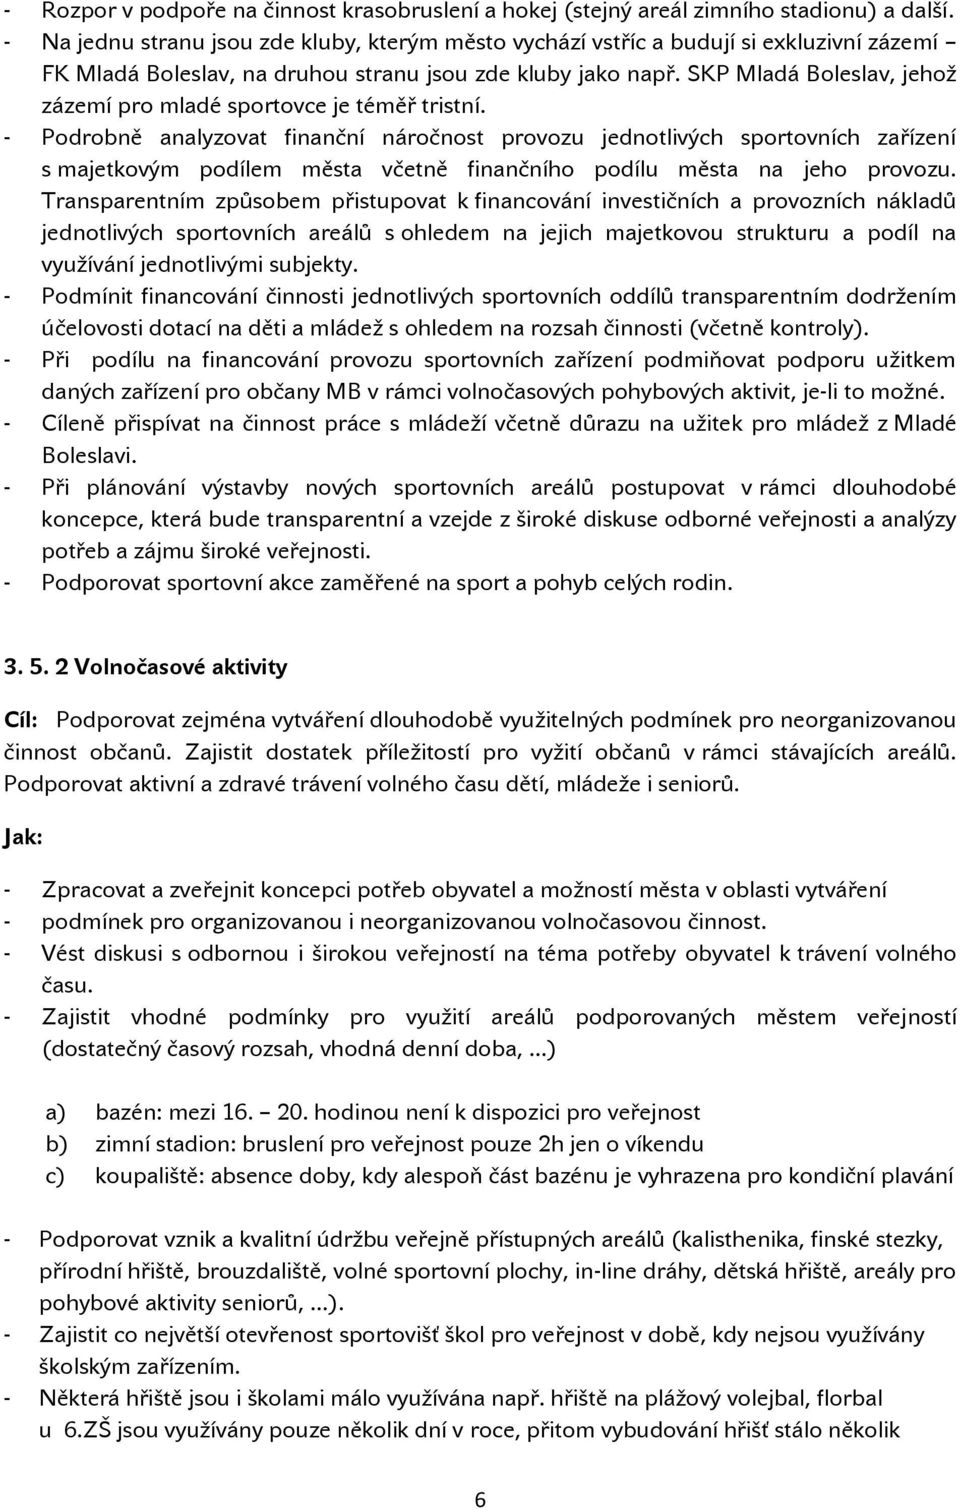 SKP Mladá Boleslav, jehož zázemí pro mladé sportovce je téměř tristní.